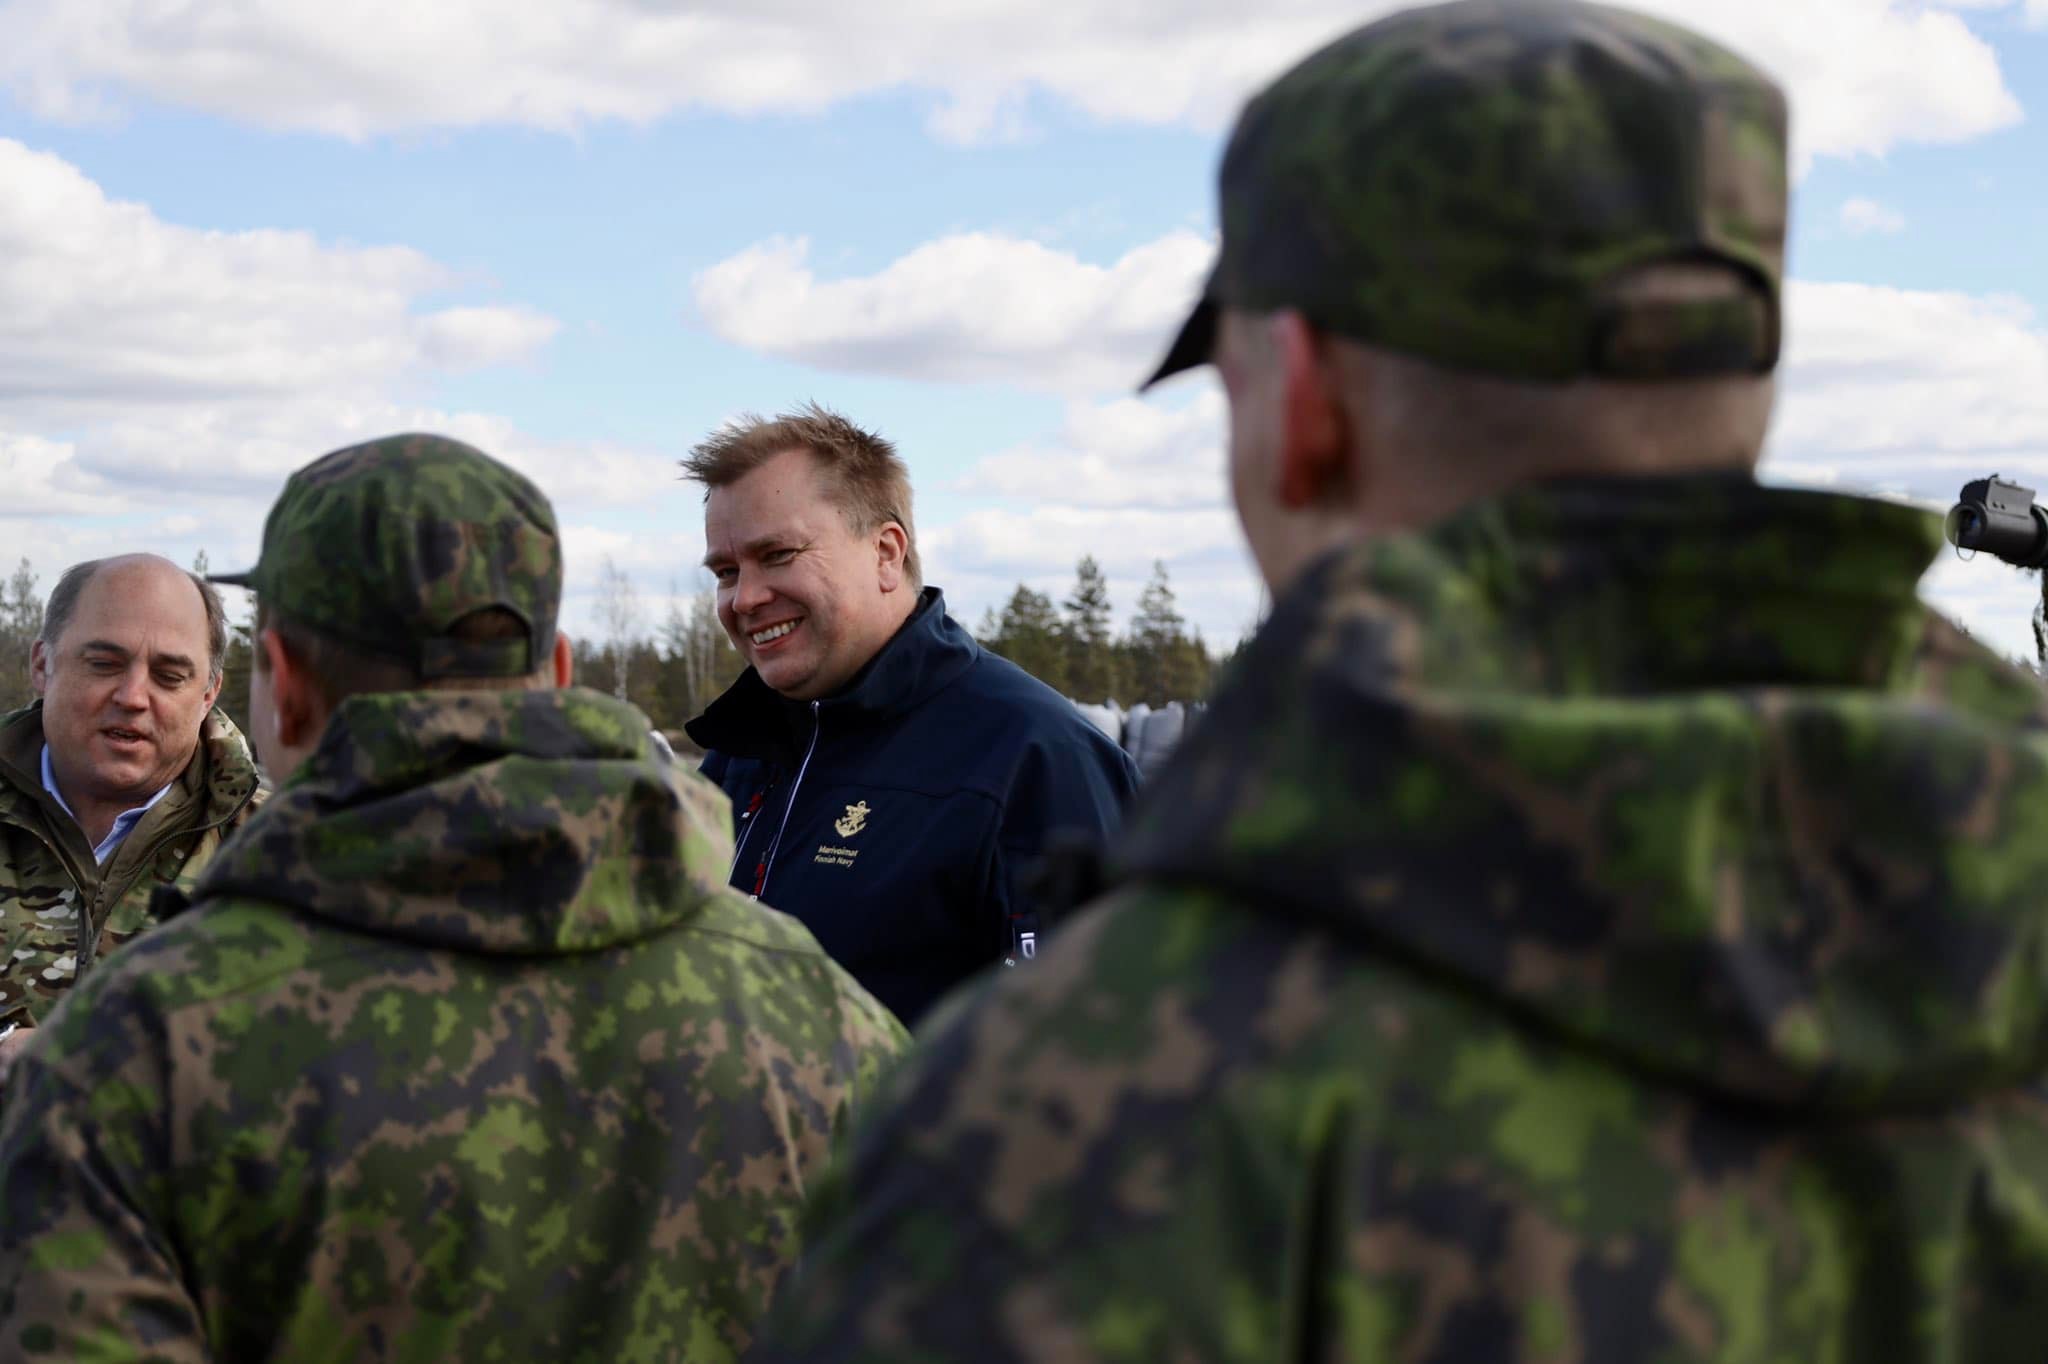 Φινλανδία ΝΑΤΟ: Ο υπουργός Άμυνας παίρνει άδεια πατρότητας εν μέσω κρίσιμων συζητήσεων